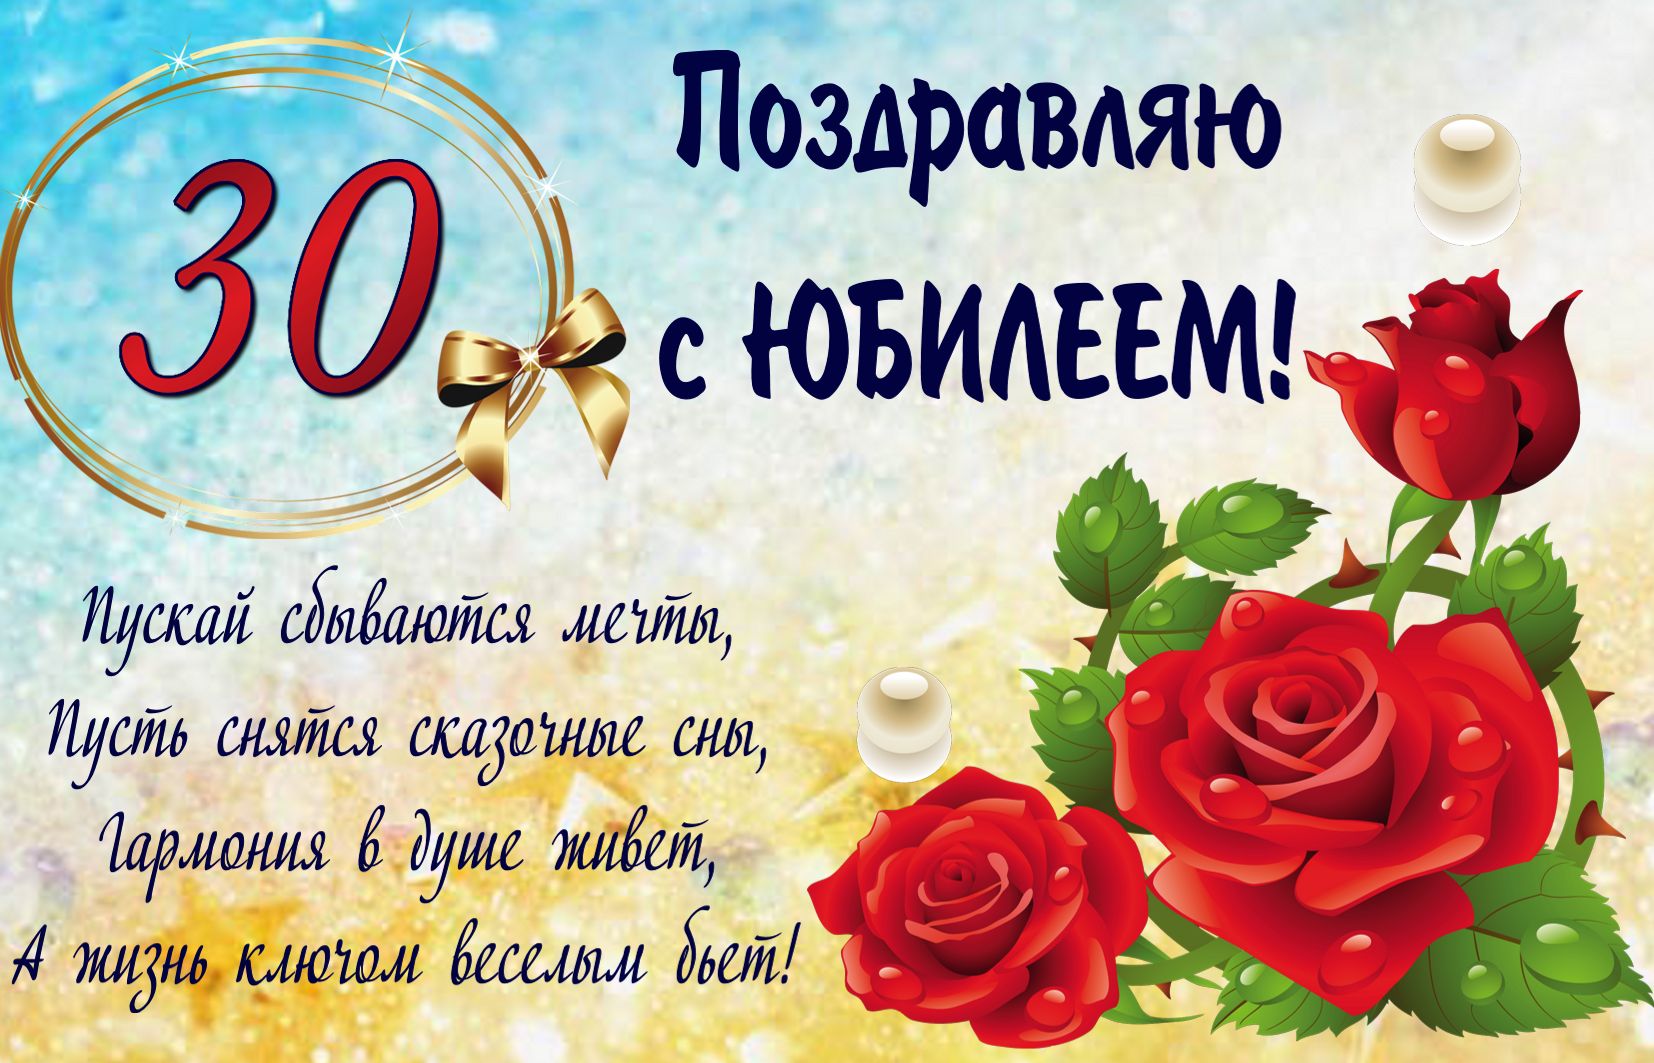 Открытка на 30 лет - поздравление на юбилей с розой